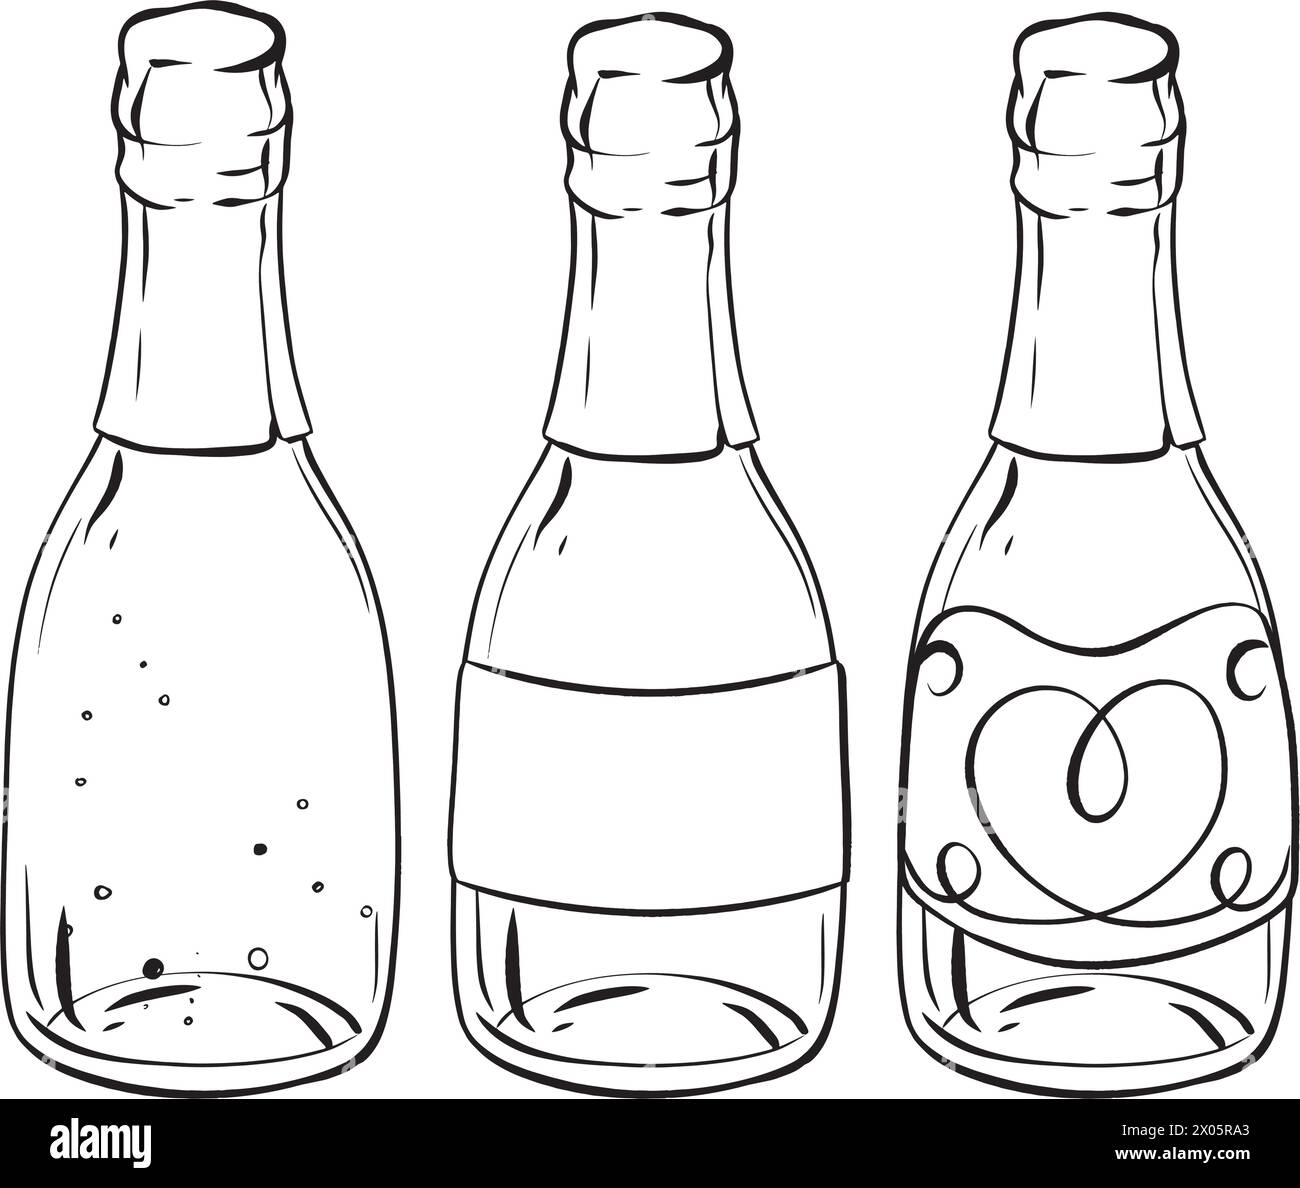 Un dessin monochrome représentant trois bouteilles de champagne Illustration de Vecteur